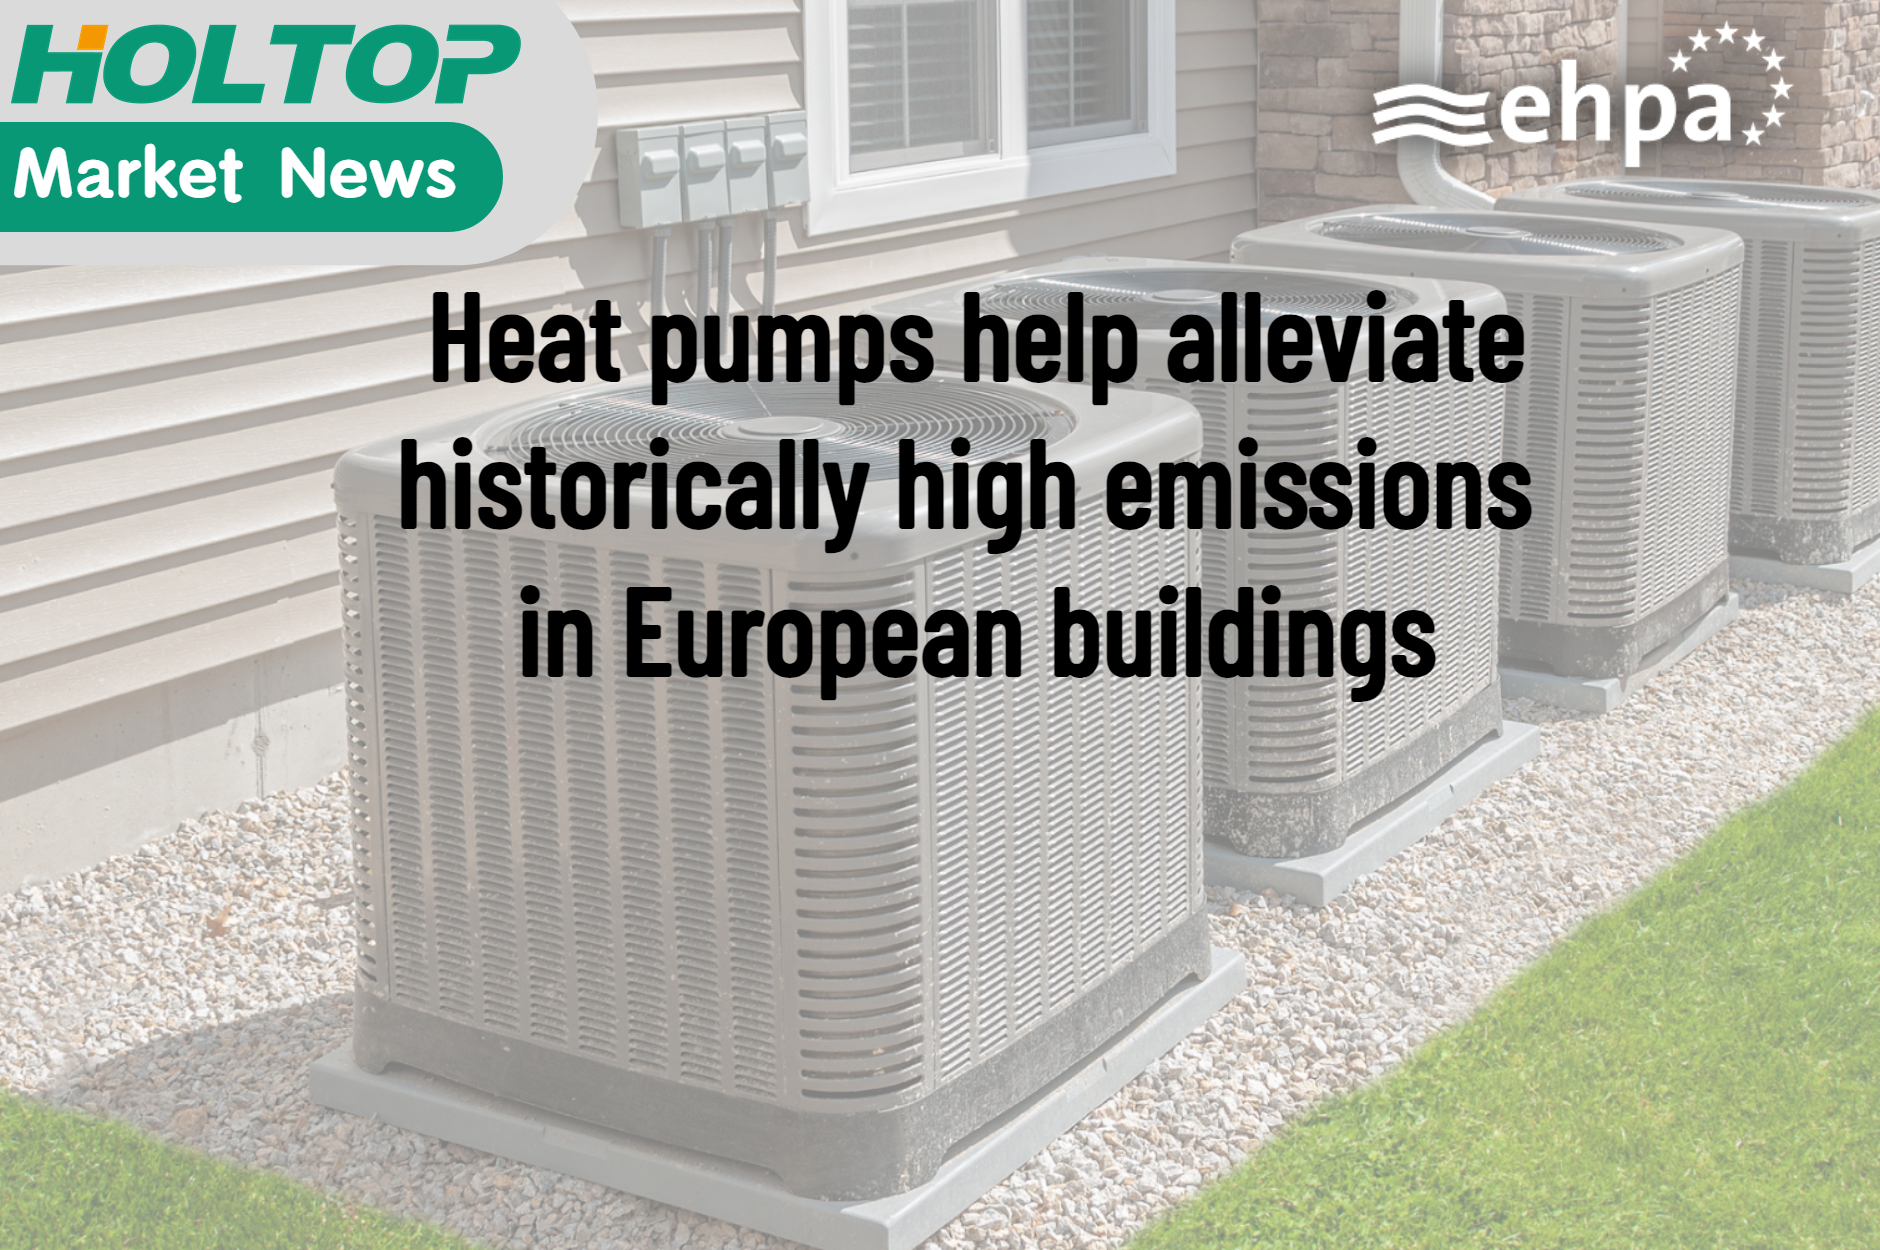 Tepelná čerpadla pomáhají snižovat historicky vysoké emise v evropských budovách